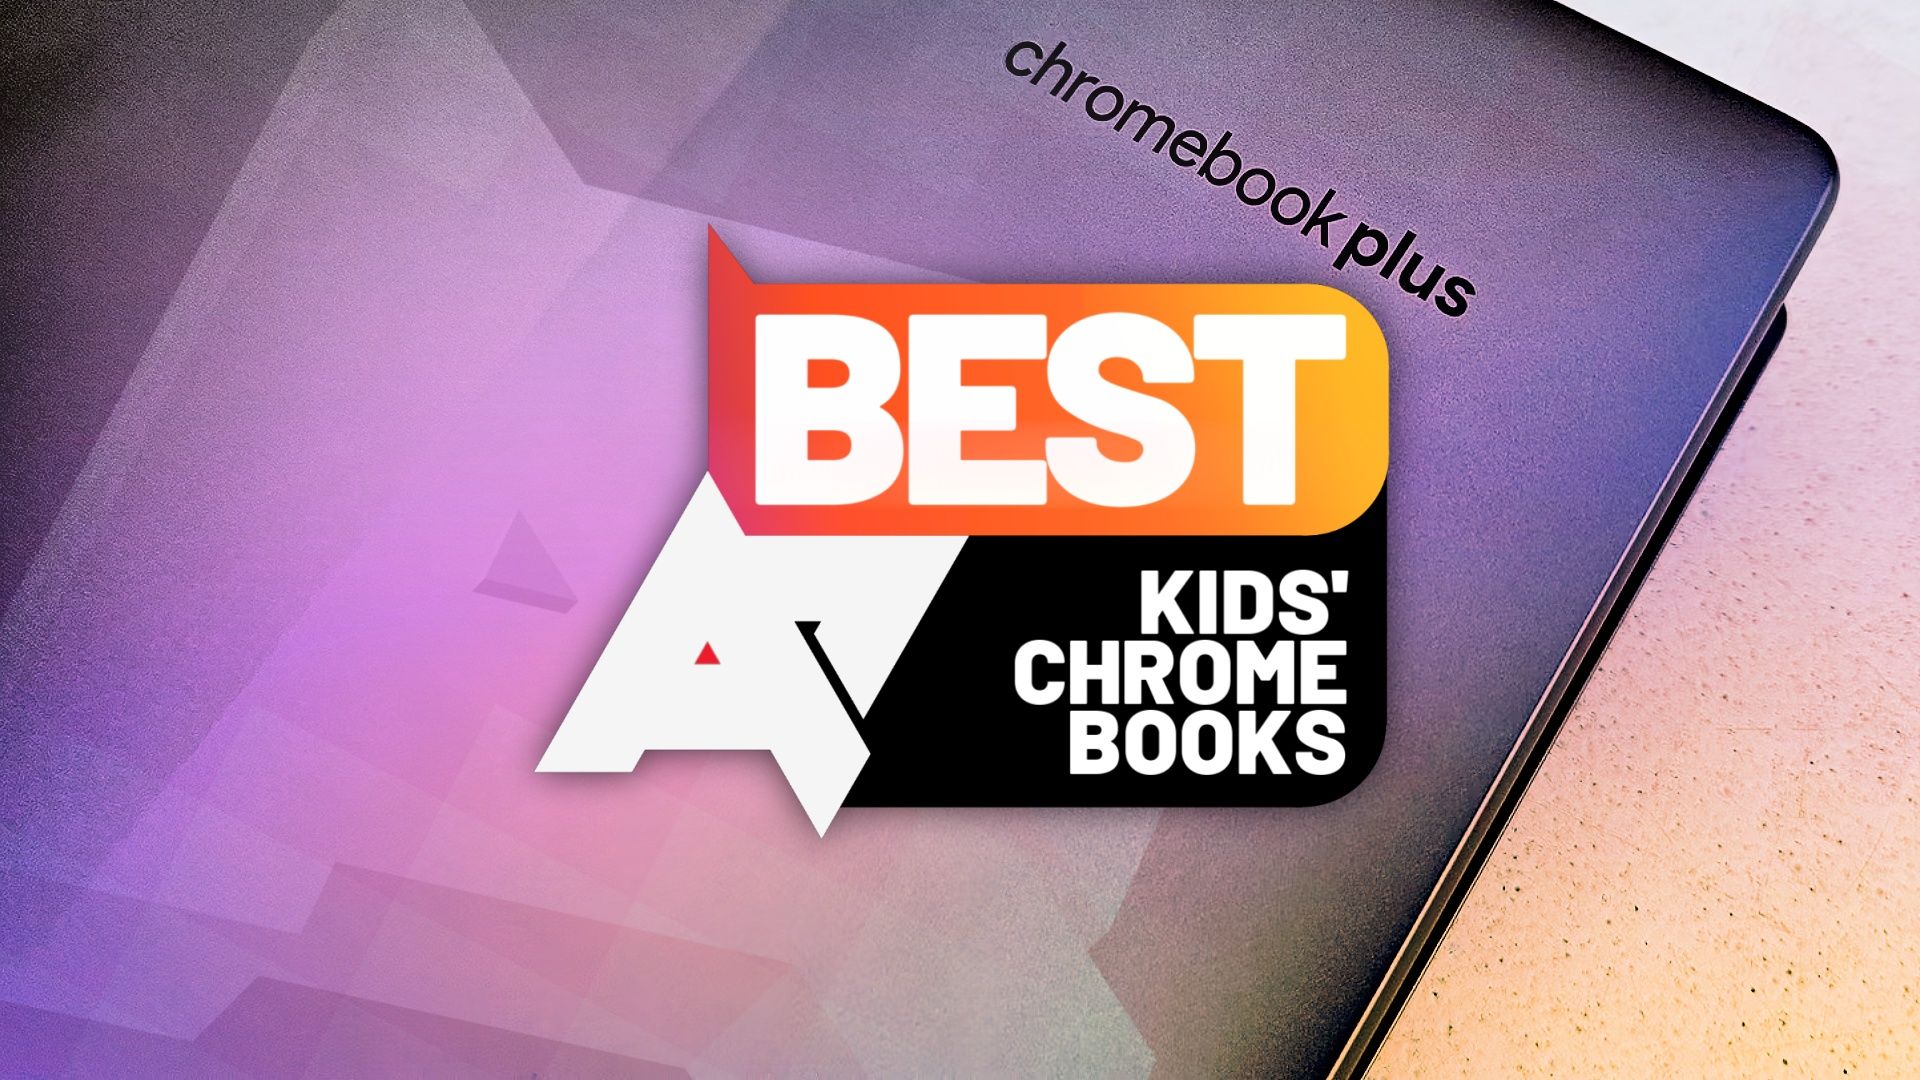 Uma imagem do logotipo 'Chromebook Plus' na parte traseira de um laptop, com o logotipo 'AP Best Kids' Chromebooks' na parte superior